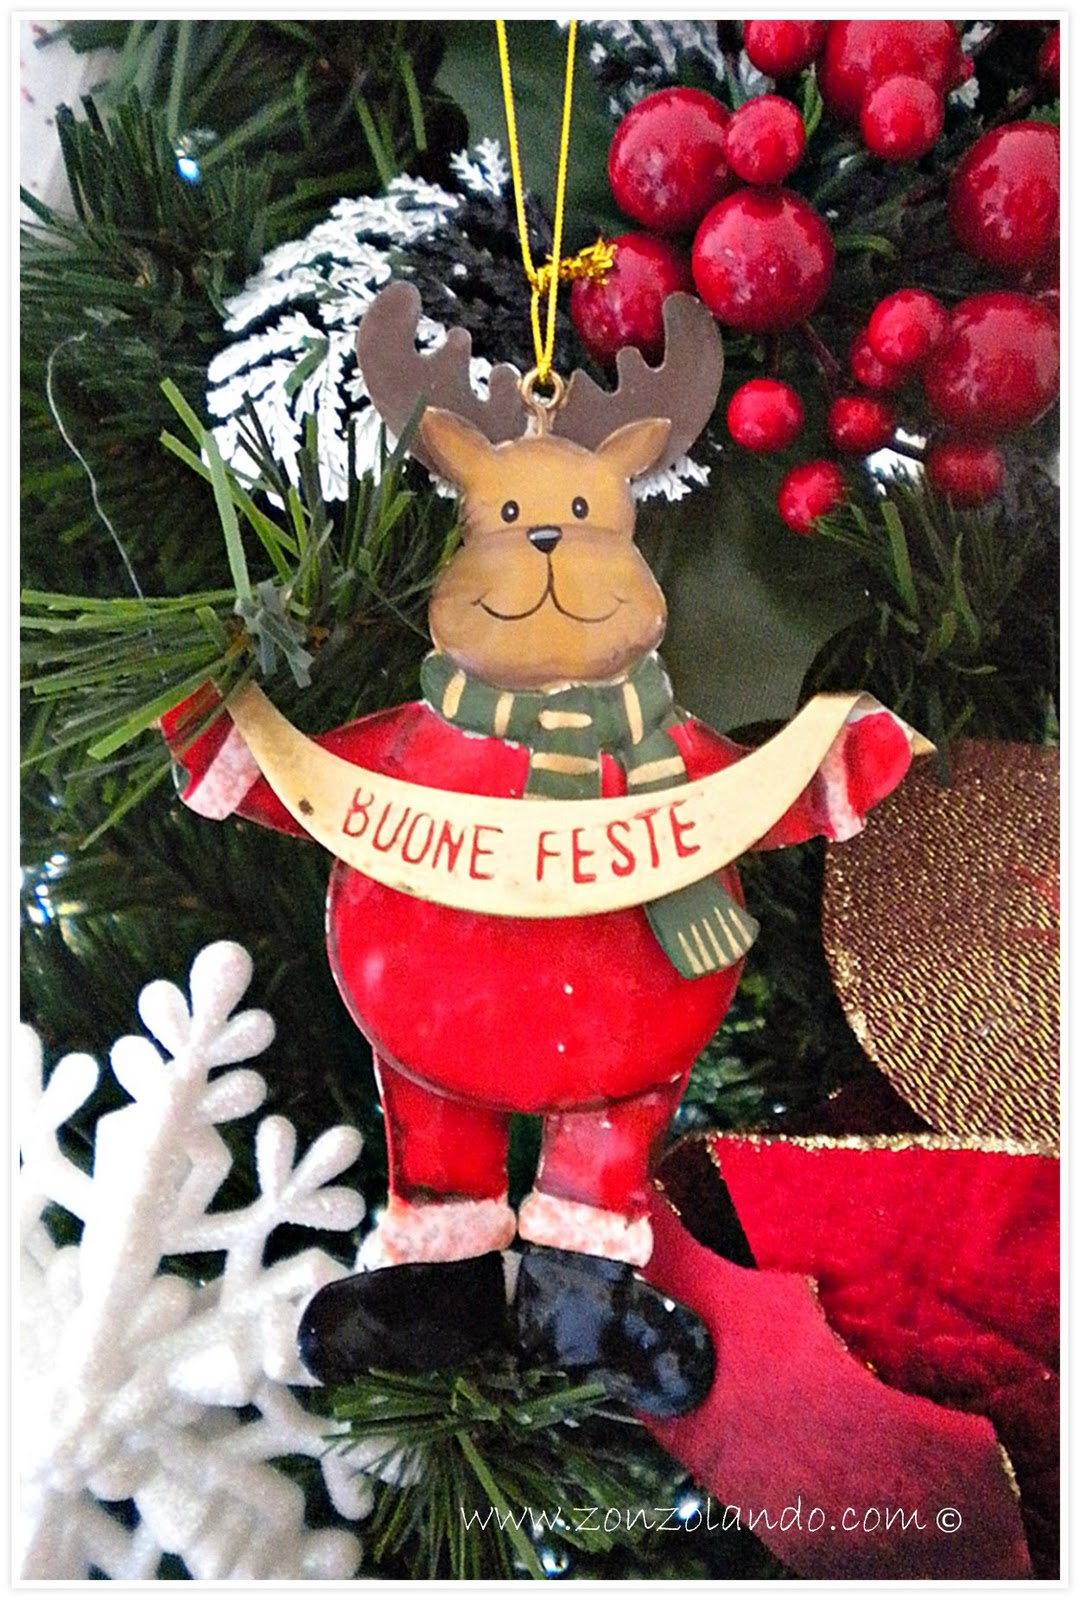 Buone feste 2011 - Merry Christmas 2011